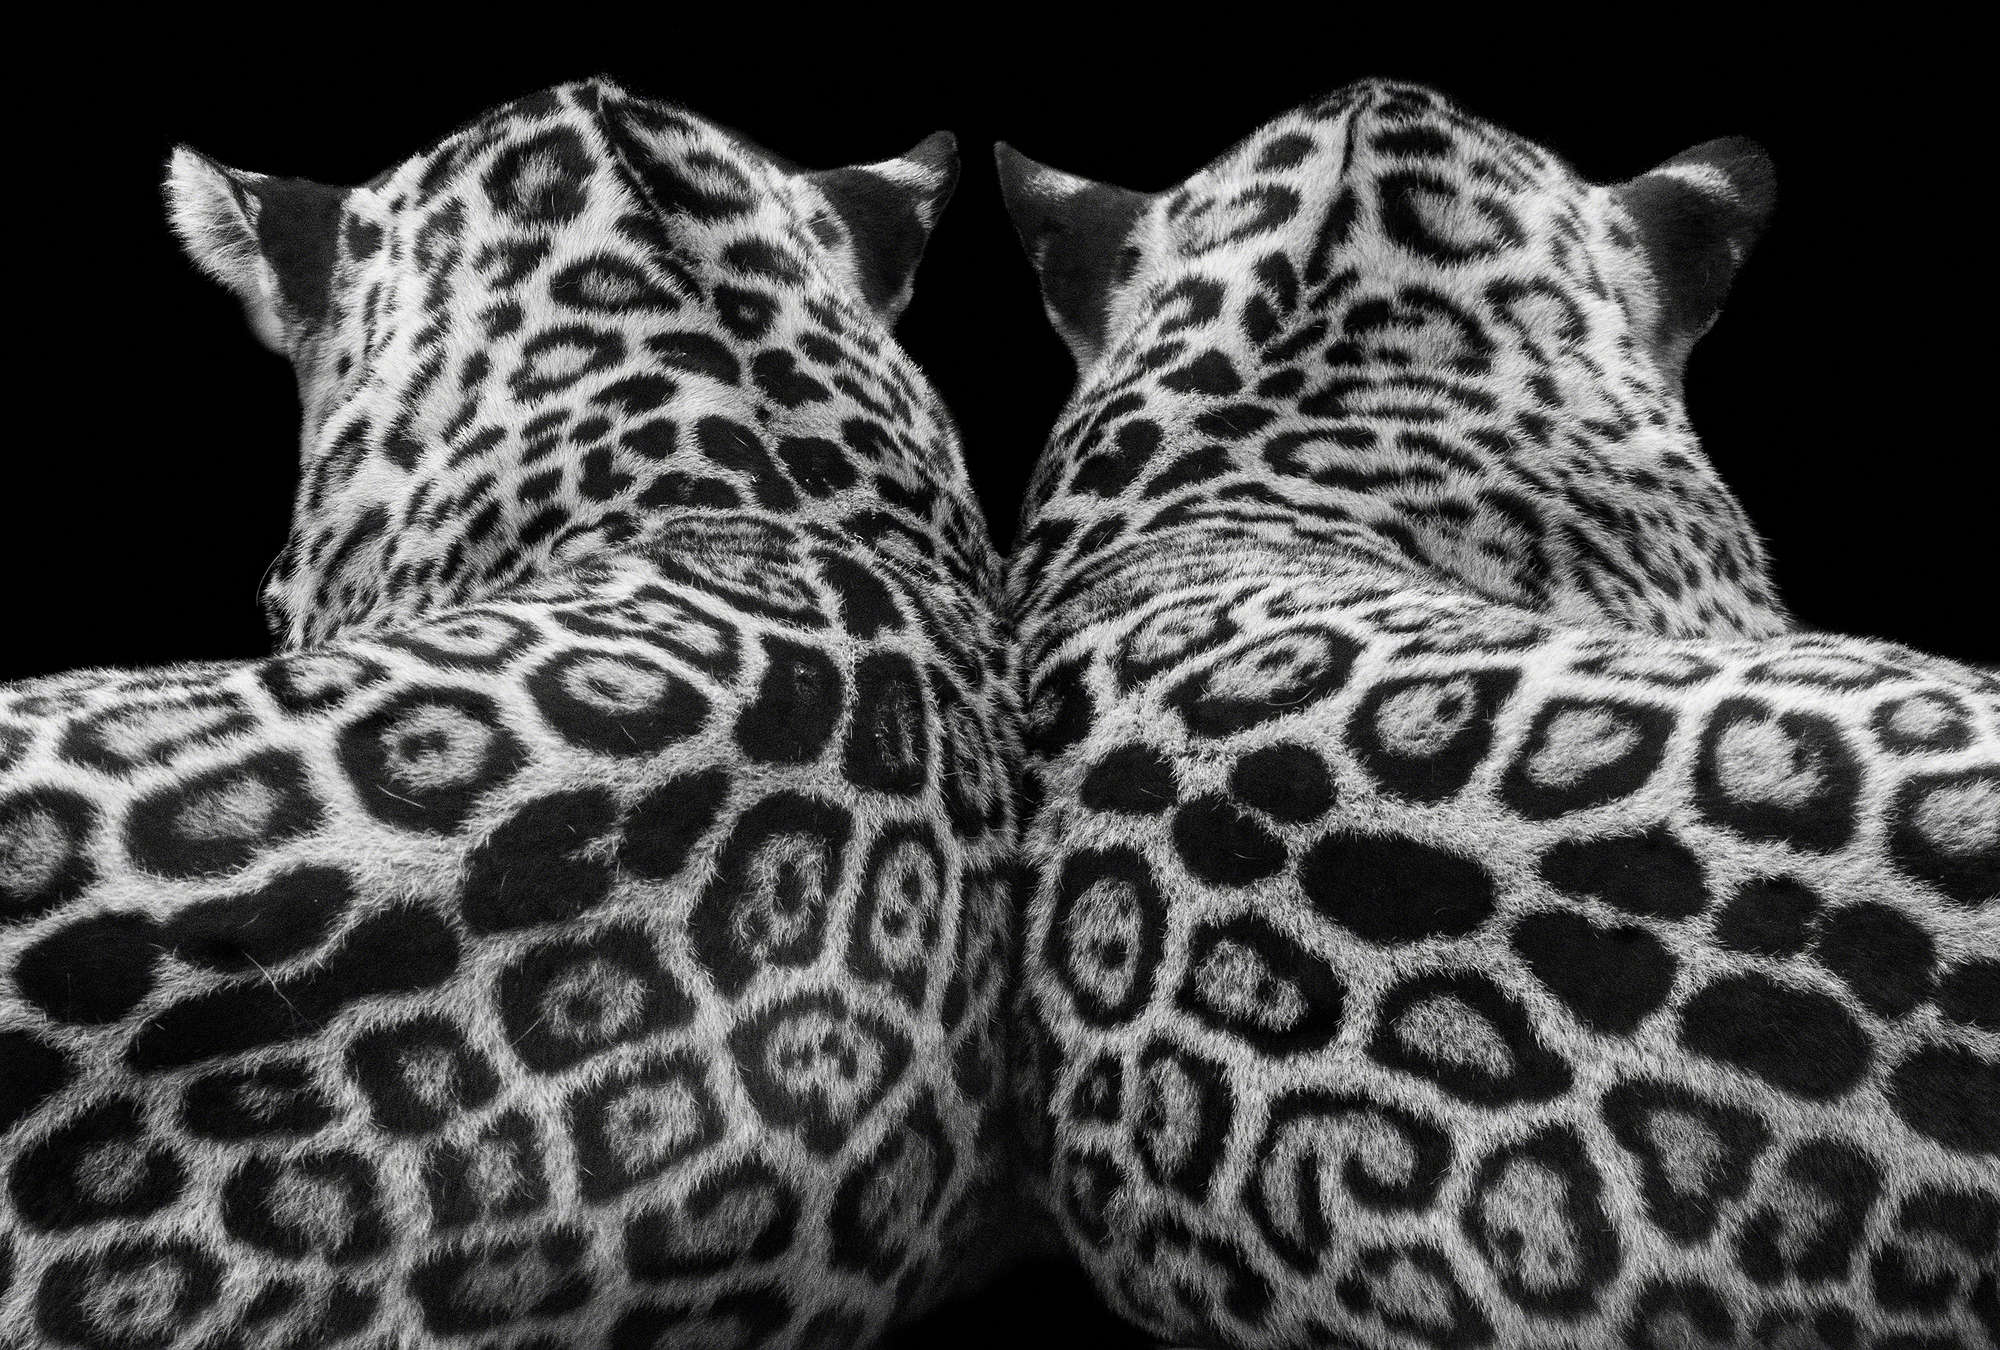             Fototapete Leopardenpaar vor schwarzem Hintergrund
        